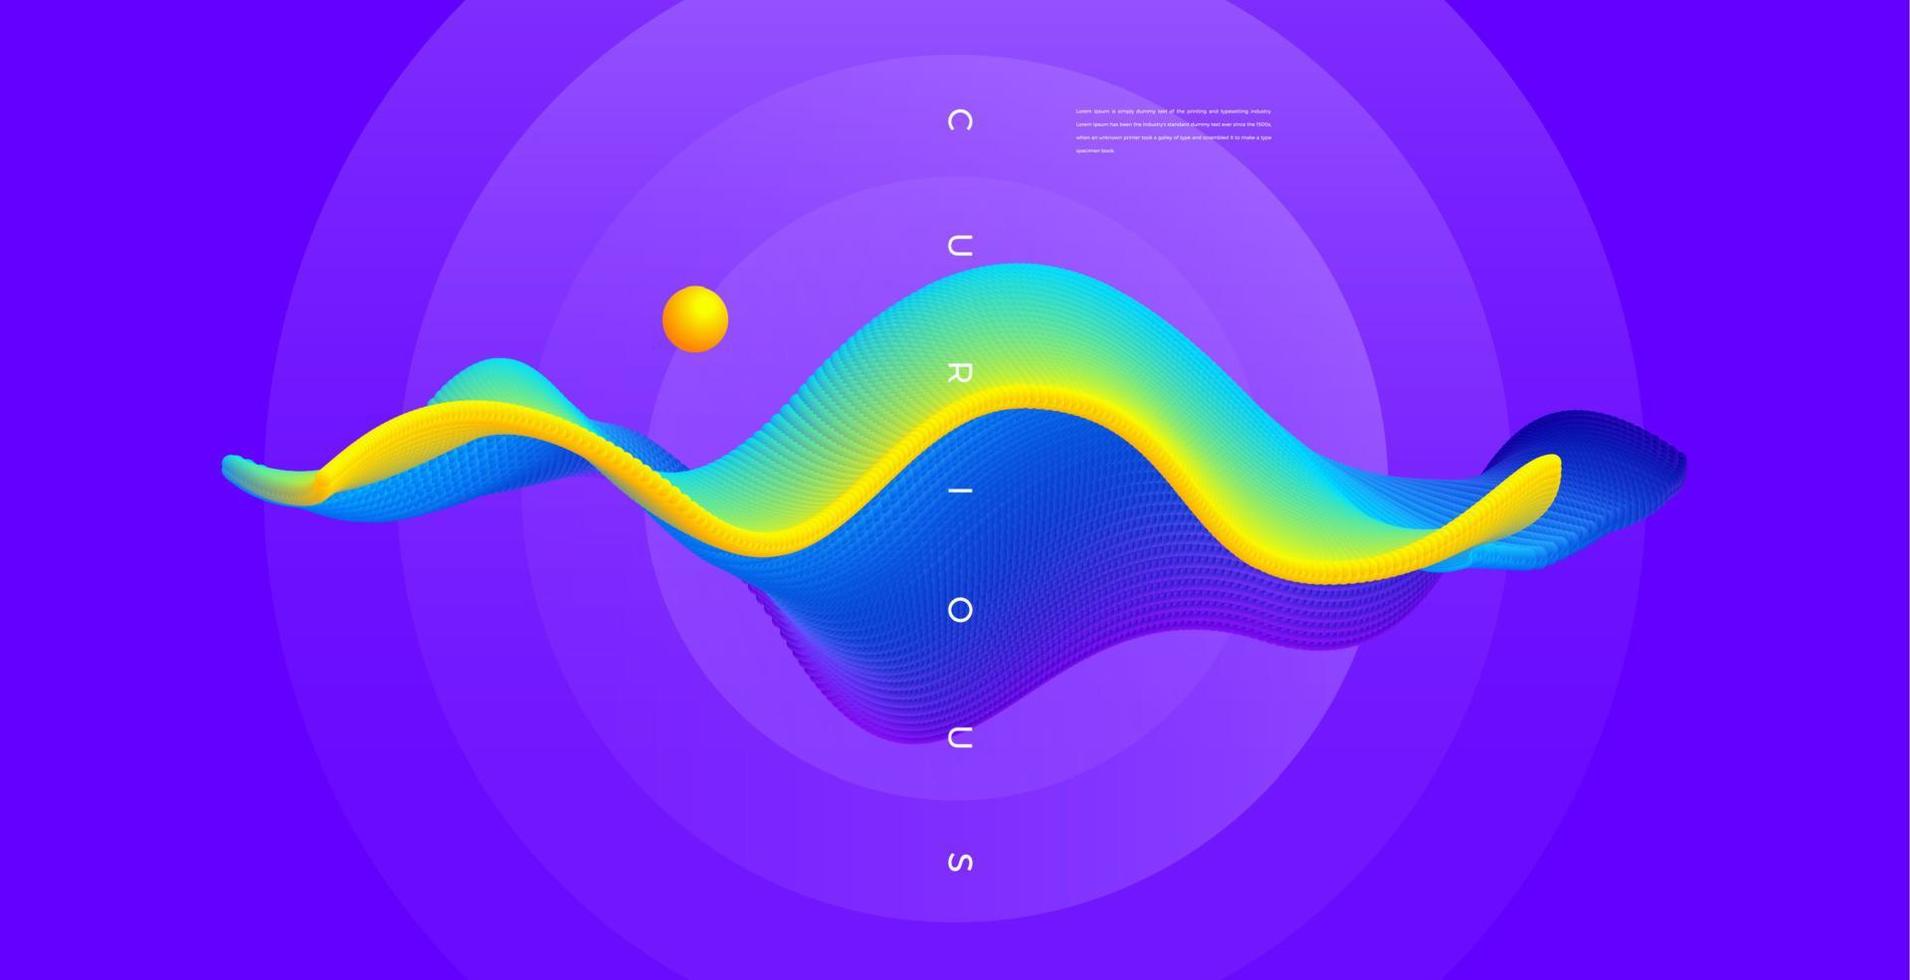 sfondo colorato moderno dell'onda delle particelle con il design dell'elemento concettuale vettore